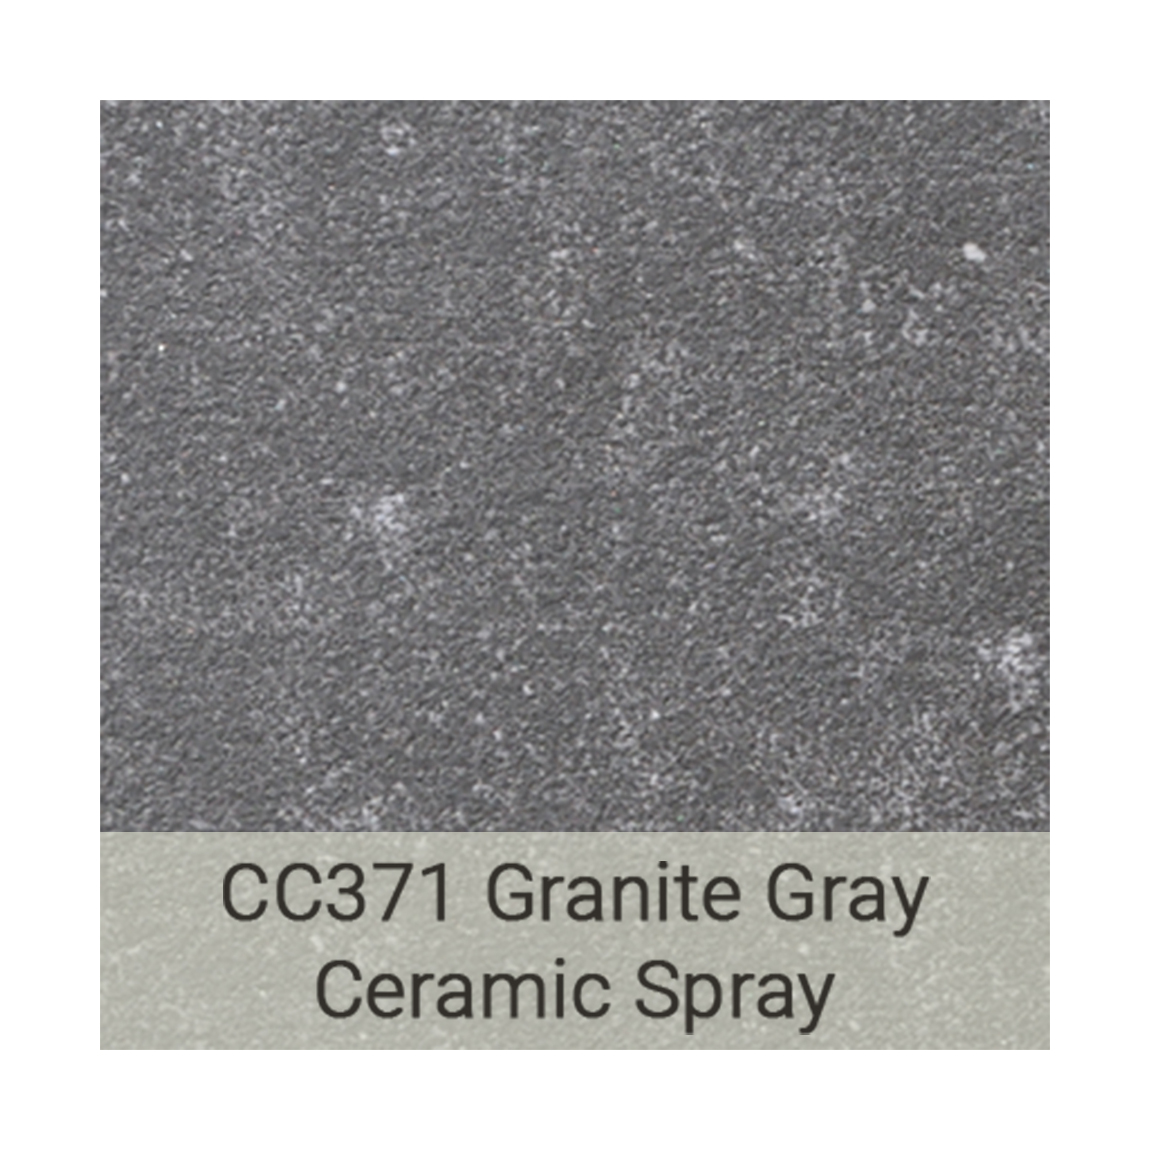 Kingston Casual tabletops-cc371-granite-gray-ceramic-spray